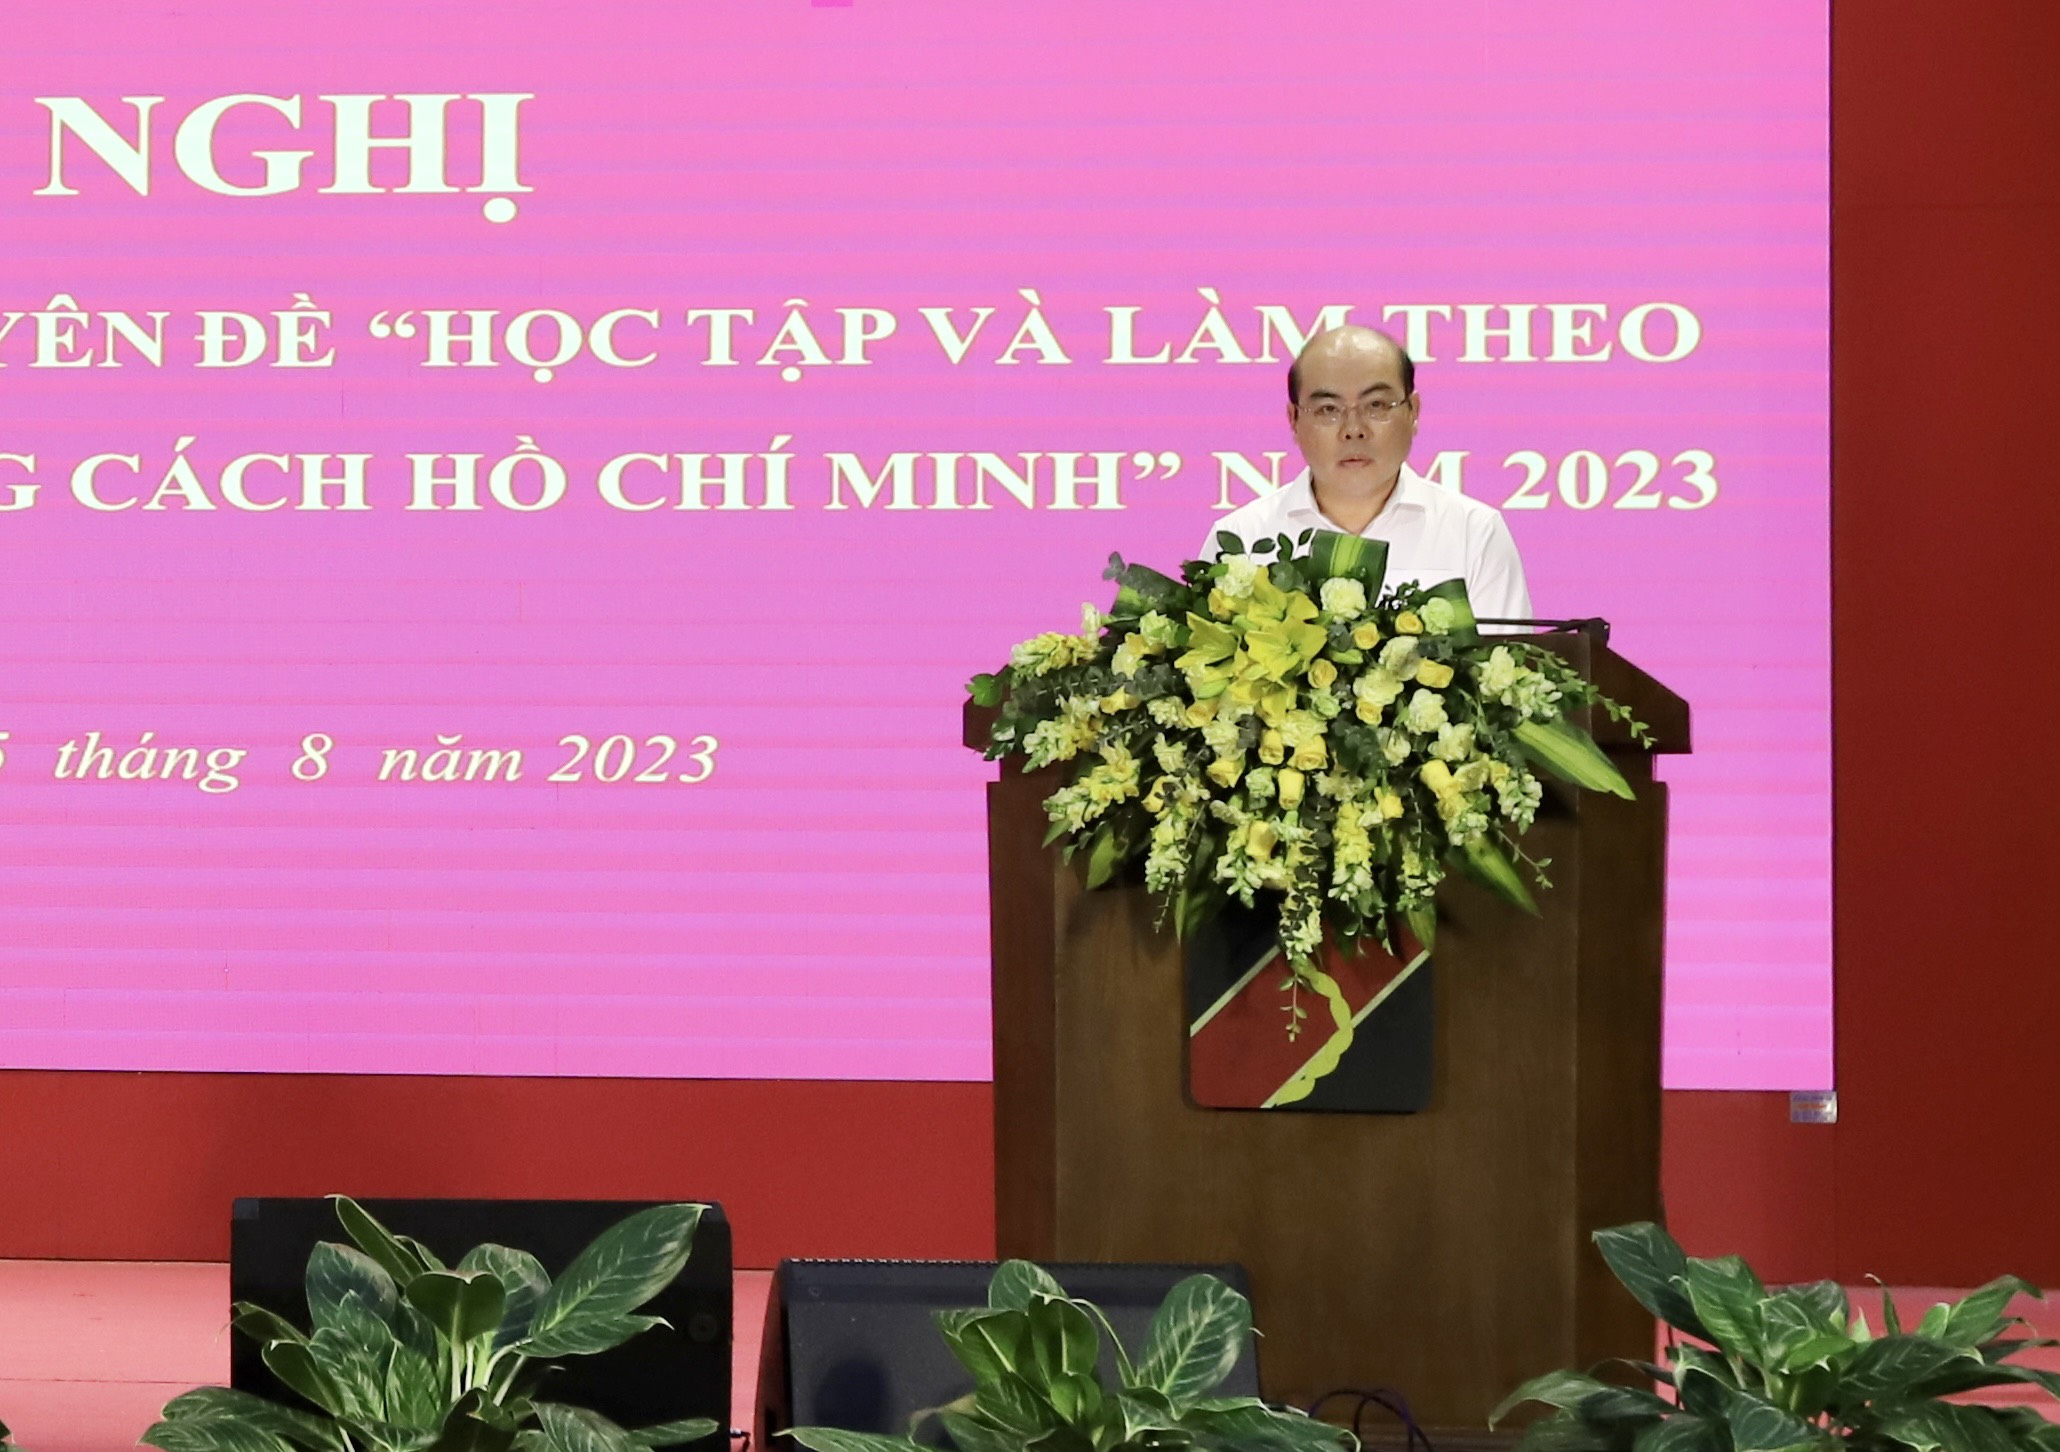 Đồng chí Trần Văn Thịnh - Phó Bí thư Thường trực Đảng ủy Agribank phát biểu chỉ đạo tại Hội nghị.